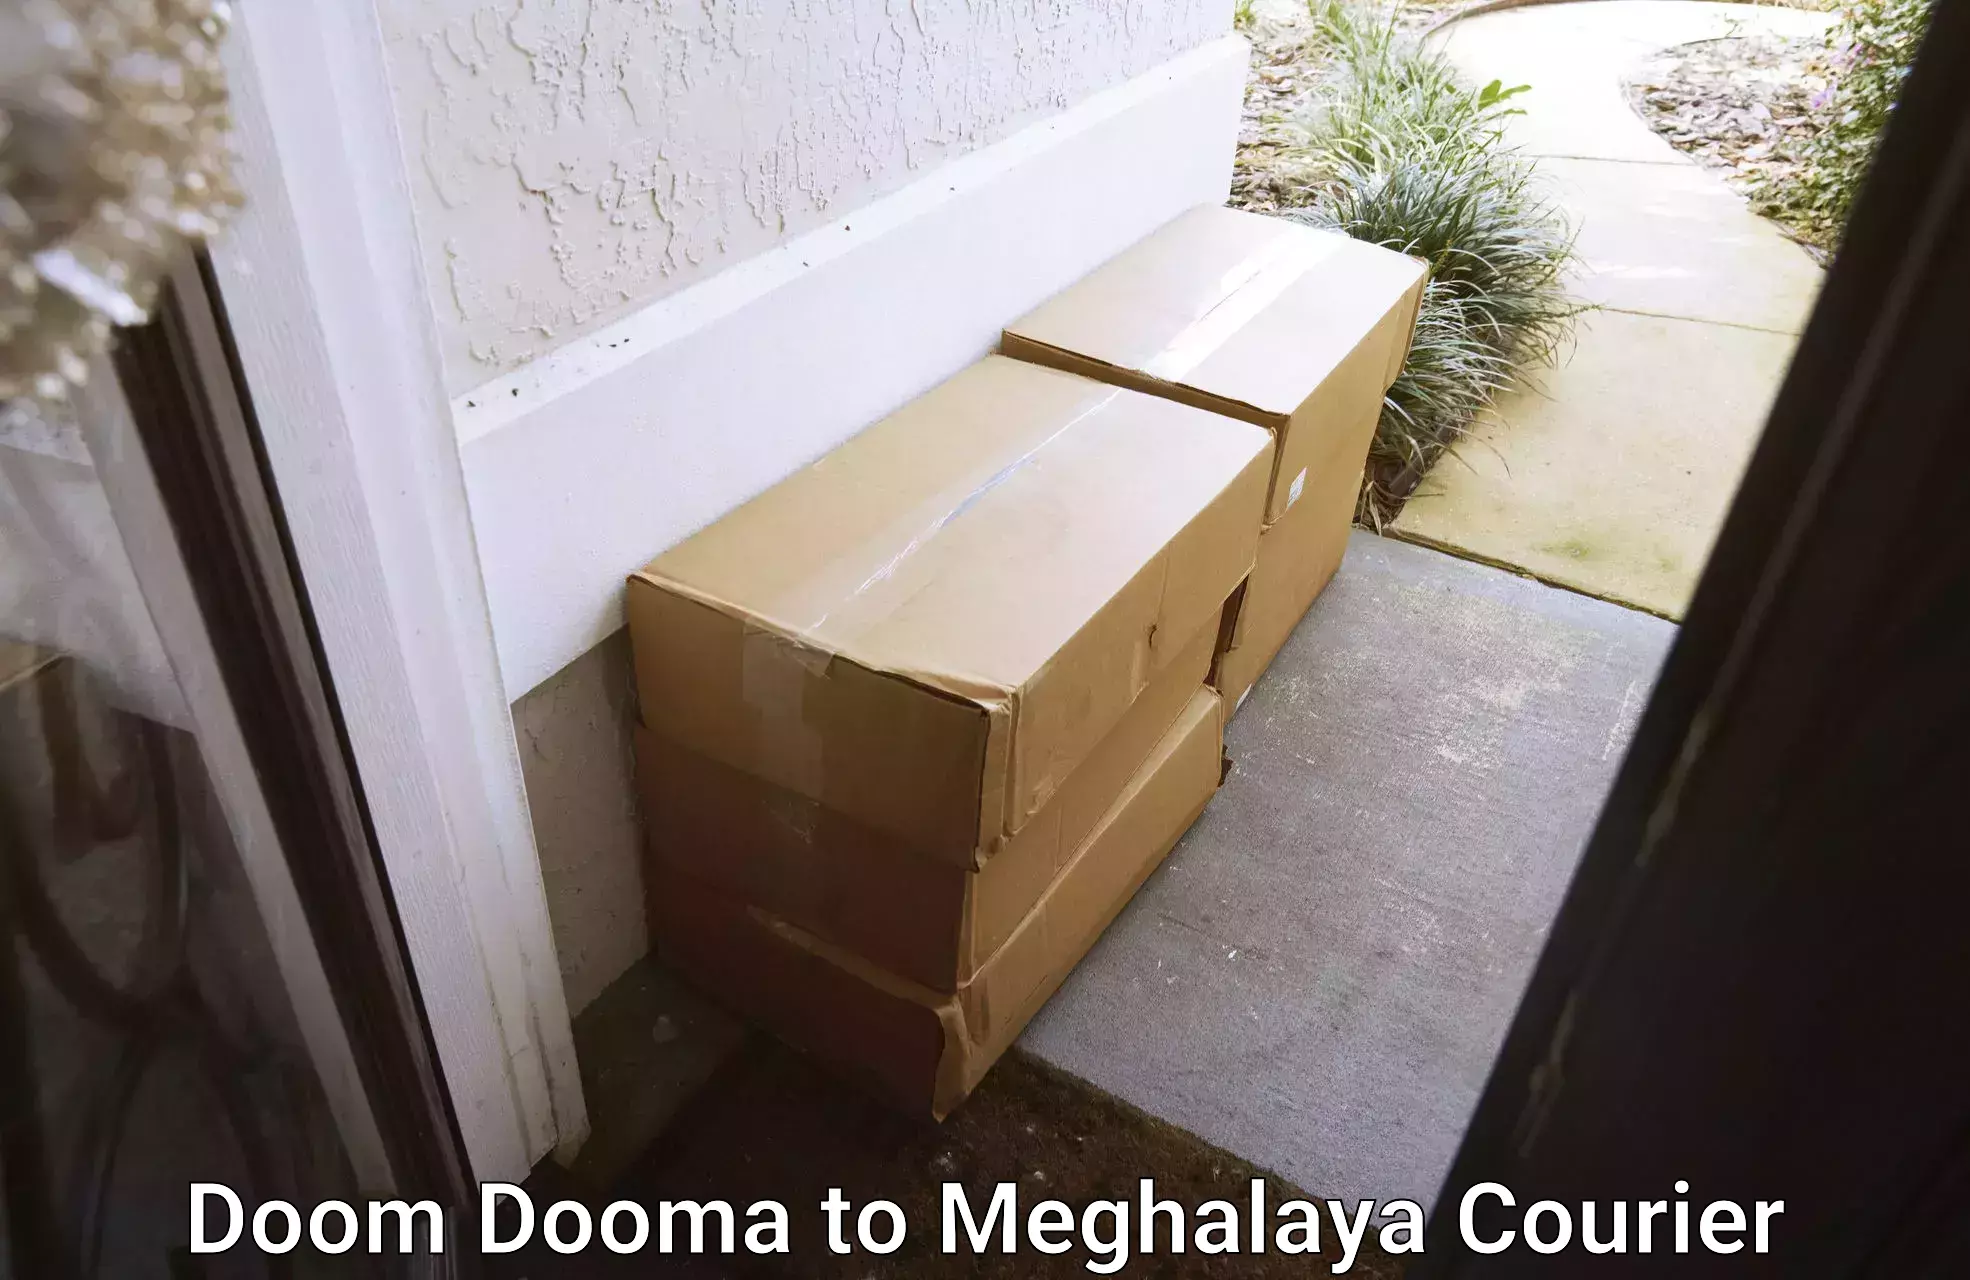 Holiday shipping services Doom Dooma to Tura